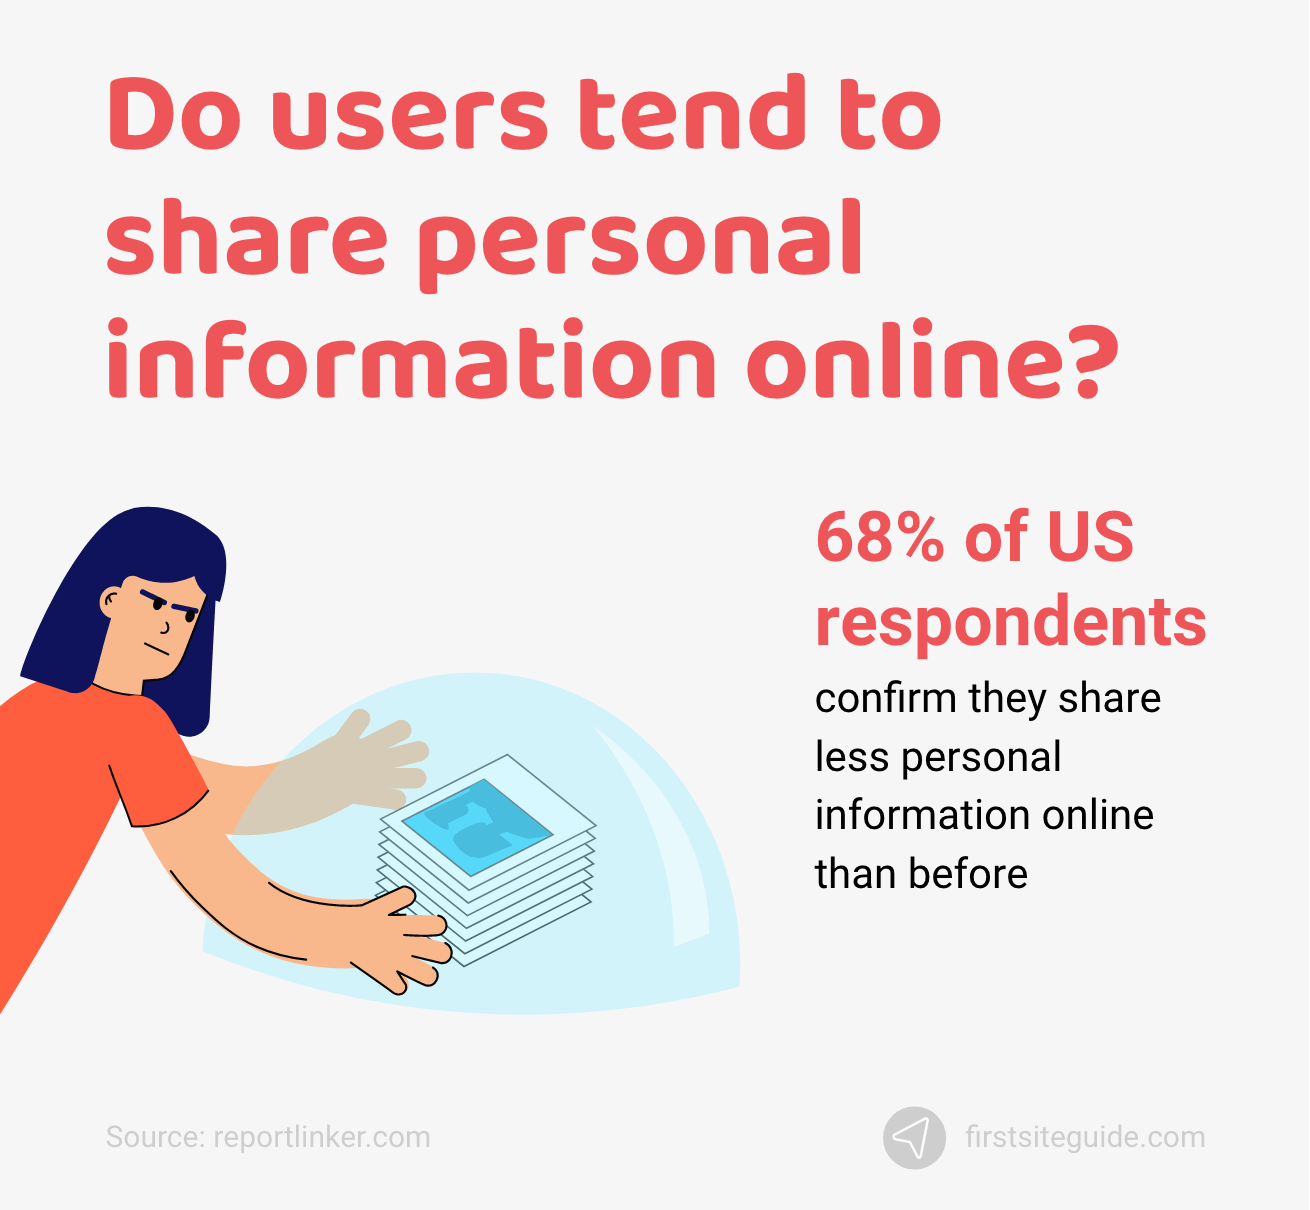 Apakah pengguna cenderung membagikan informasi pribadi secara online?